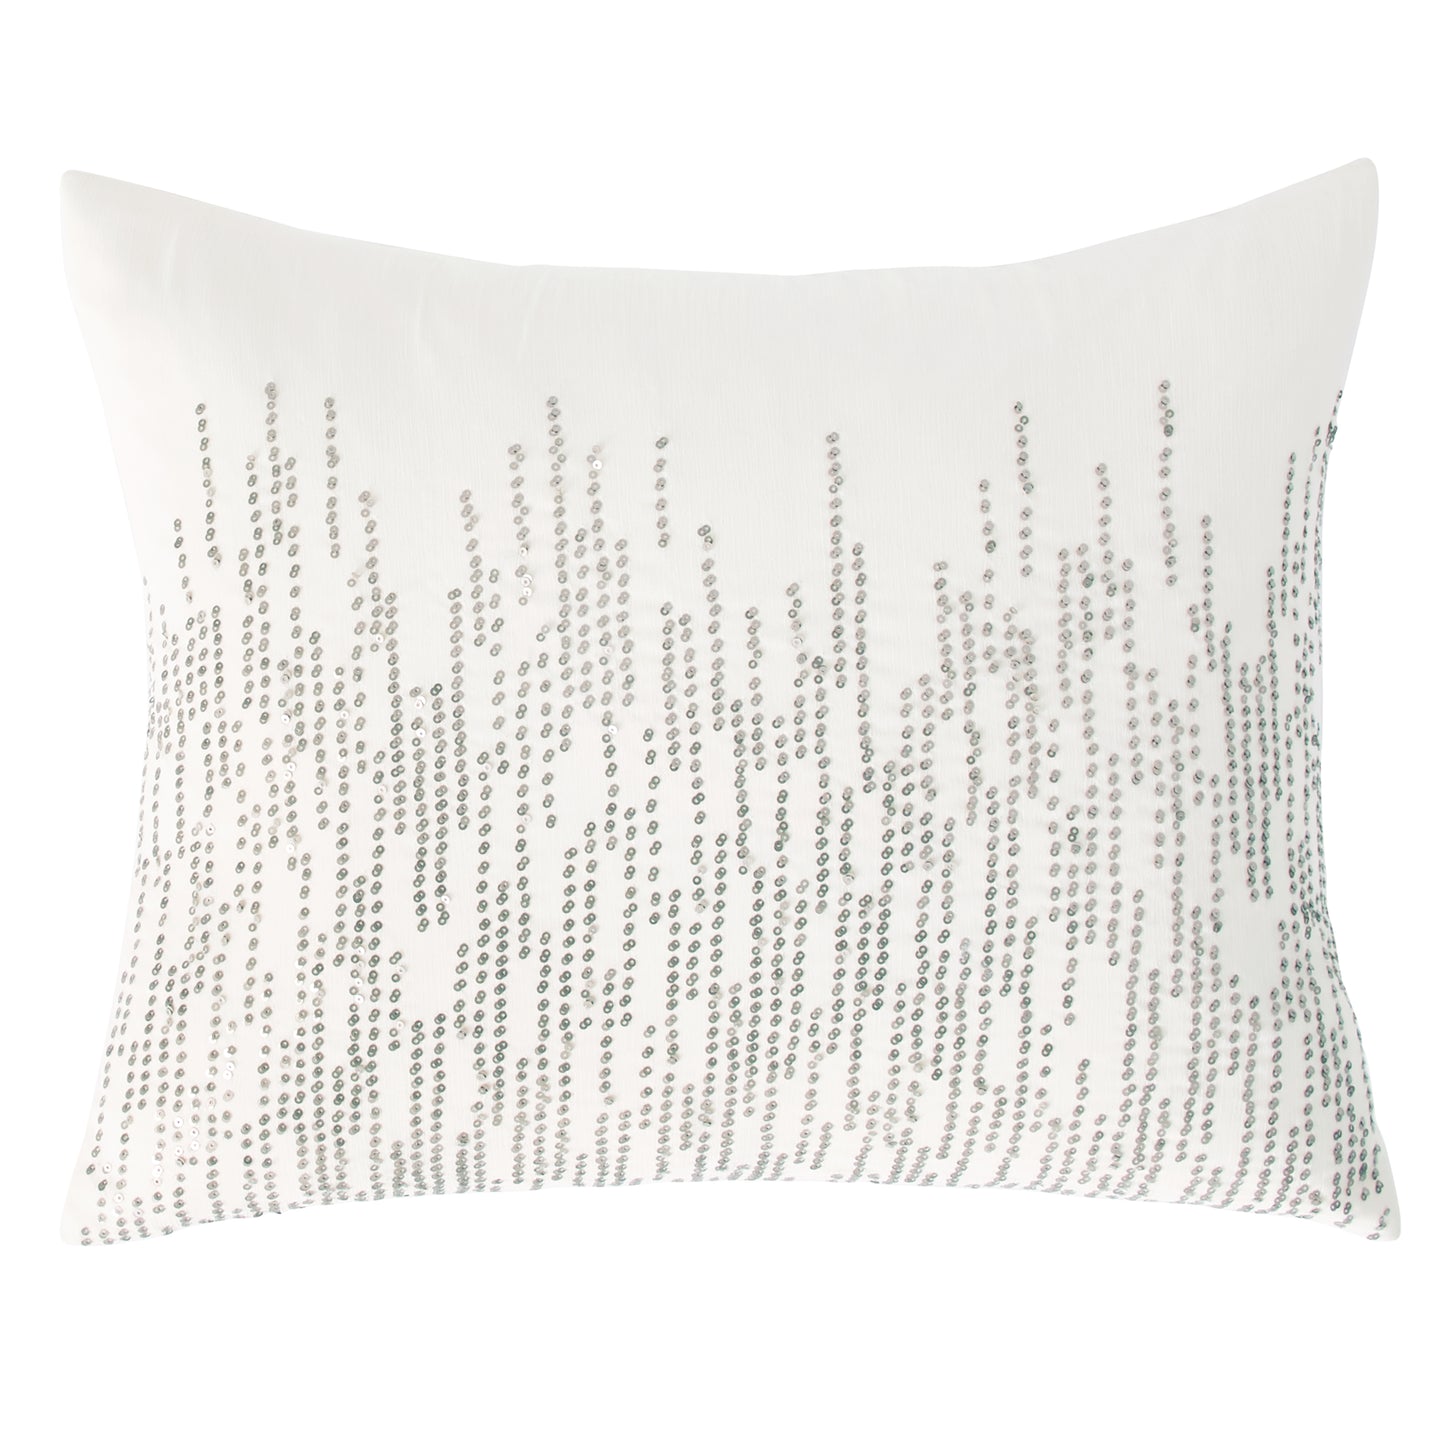 Donna Karan Alloy Bedding Collection Decorative Pillow